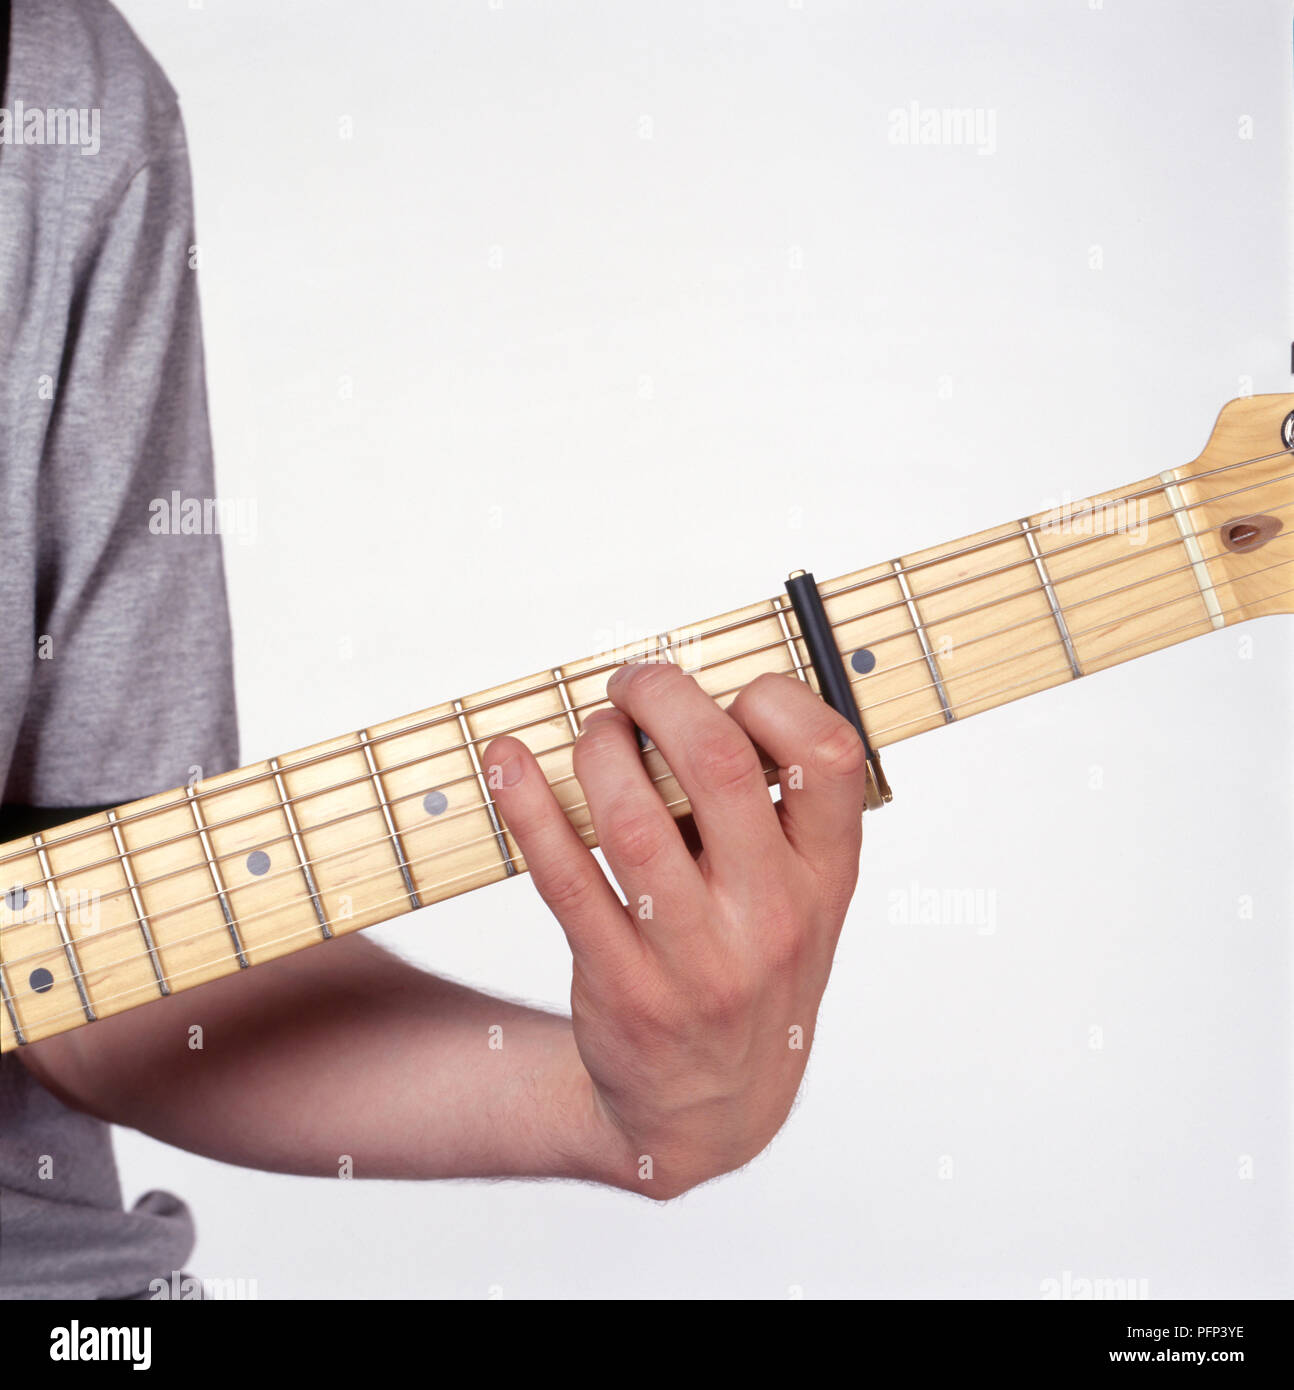 Le dita su una chitarra, giocando G major, posizione aperta, con capotasto, close-up Foto Stock